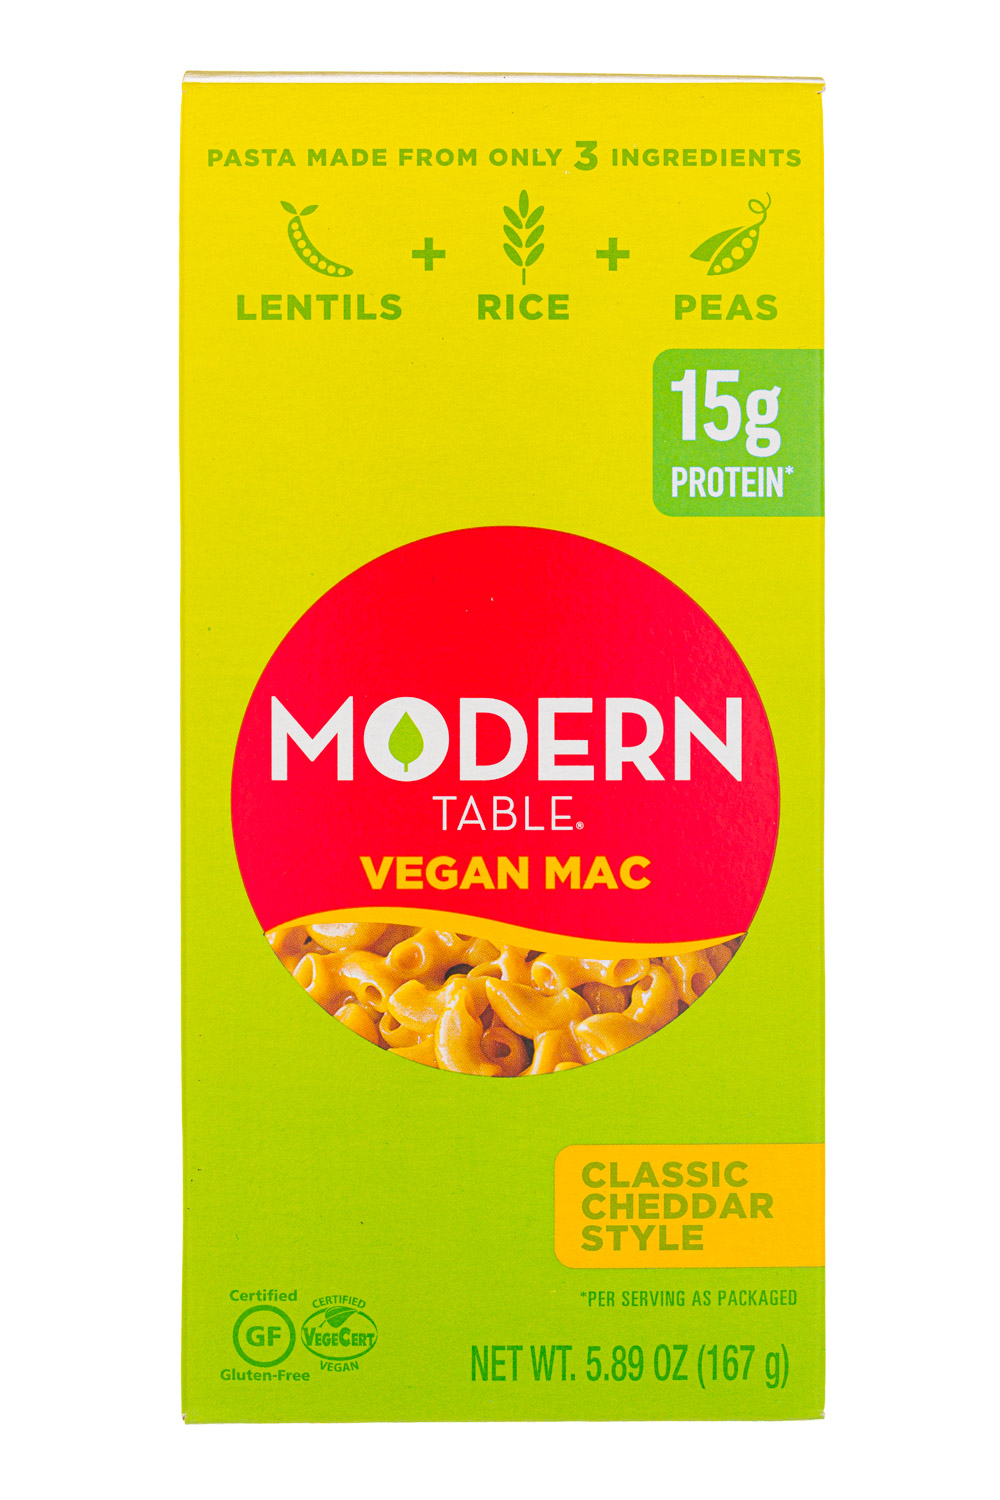 Vegan Mac: Classic Cheddar Style 2019